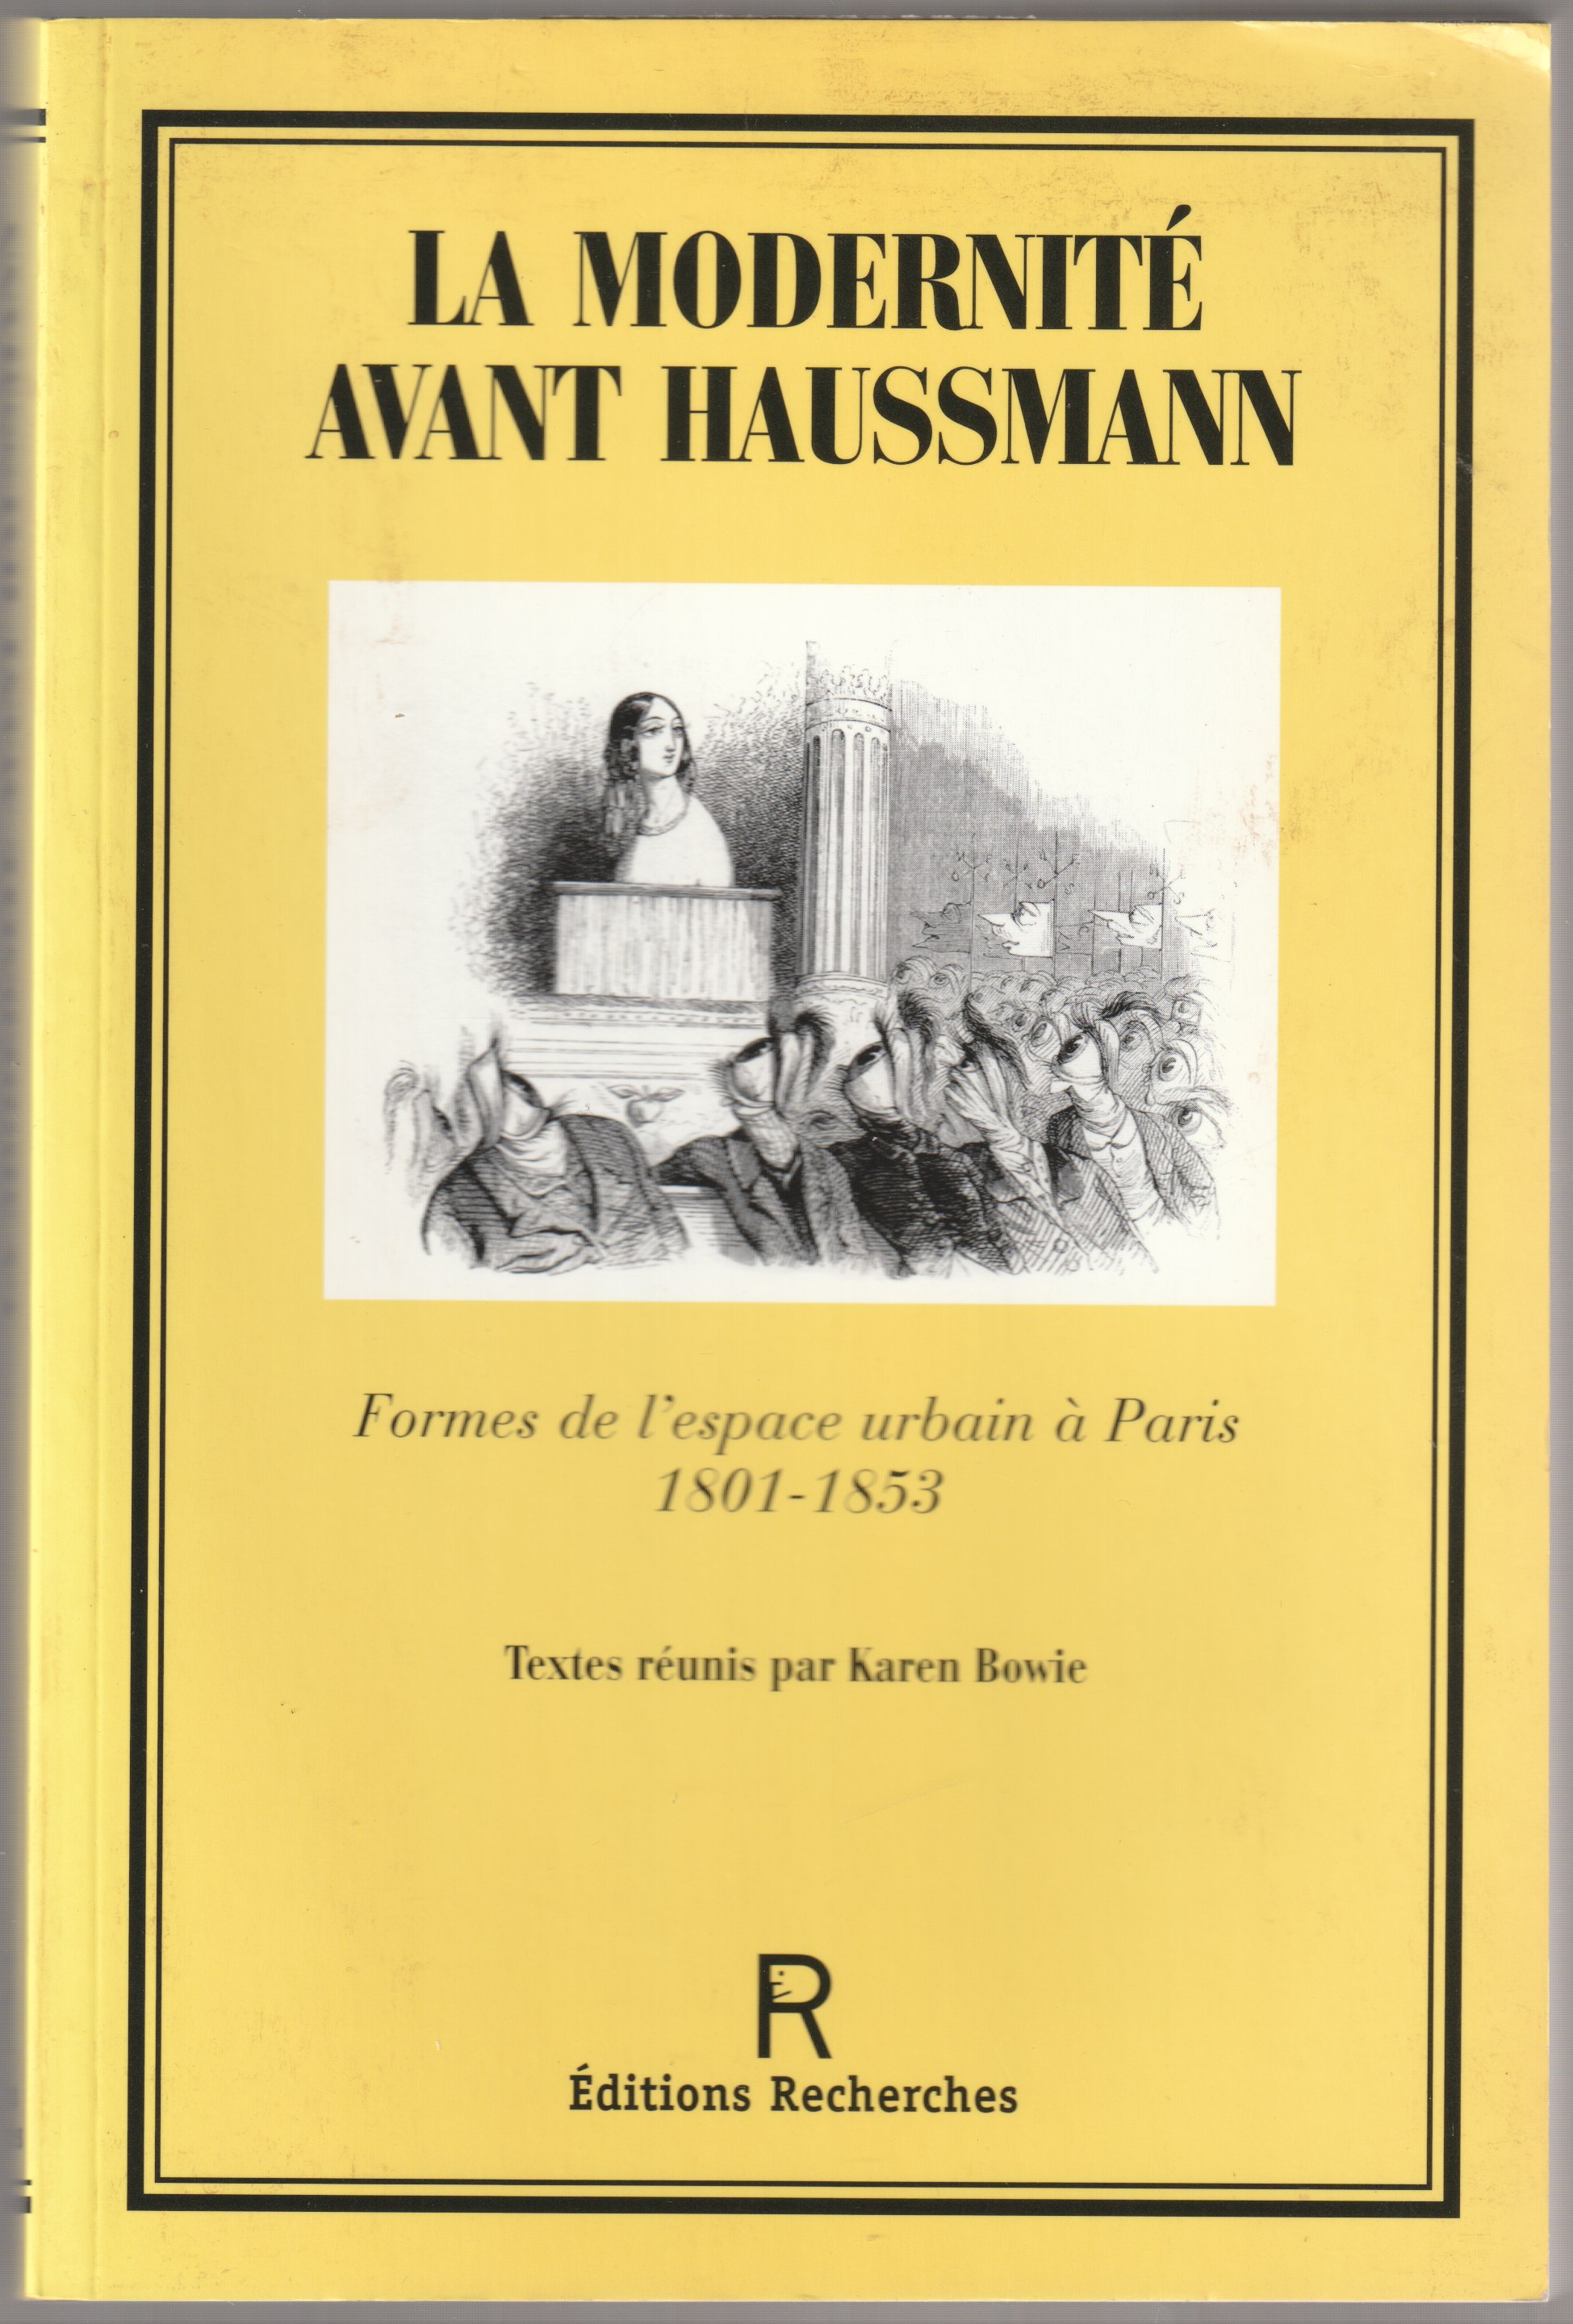 La modernite avant Haussmann : formes de l'espace urbain a Paris, 1801-1853